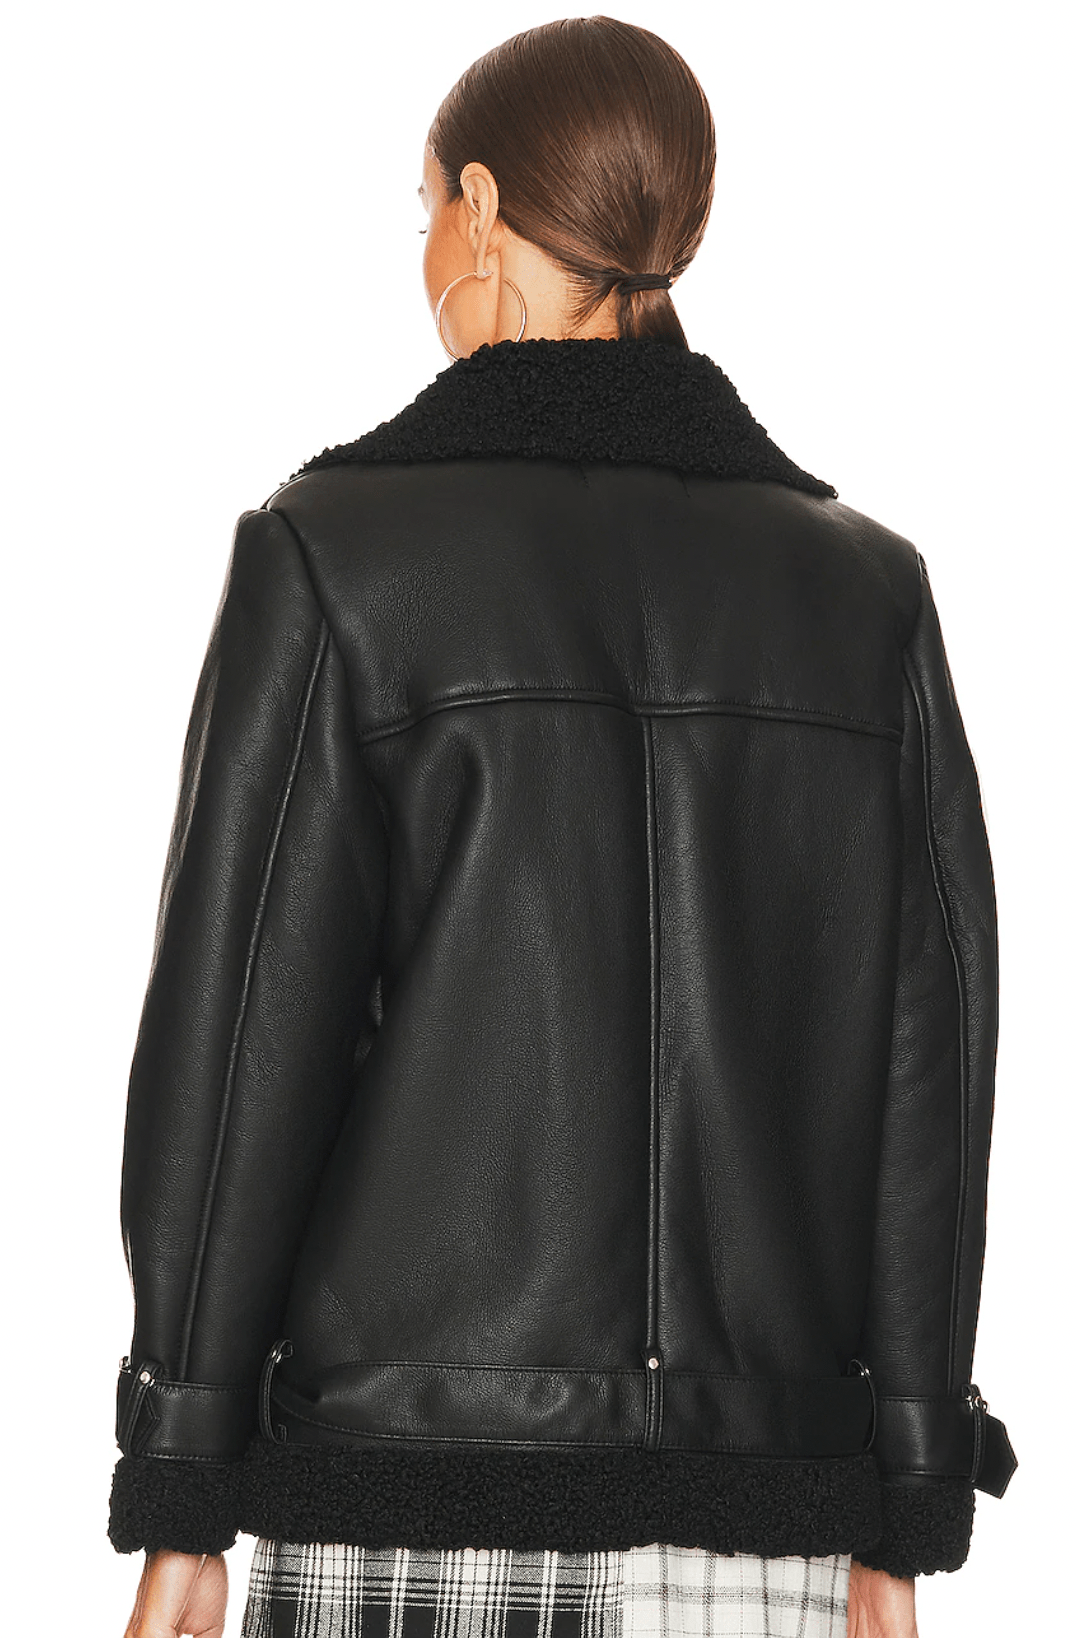 Quinn Oversized Leather Jacket Black, Jacket by Steve Madden | LIT Boutique